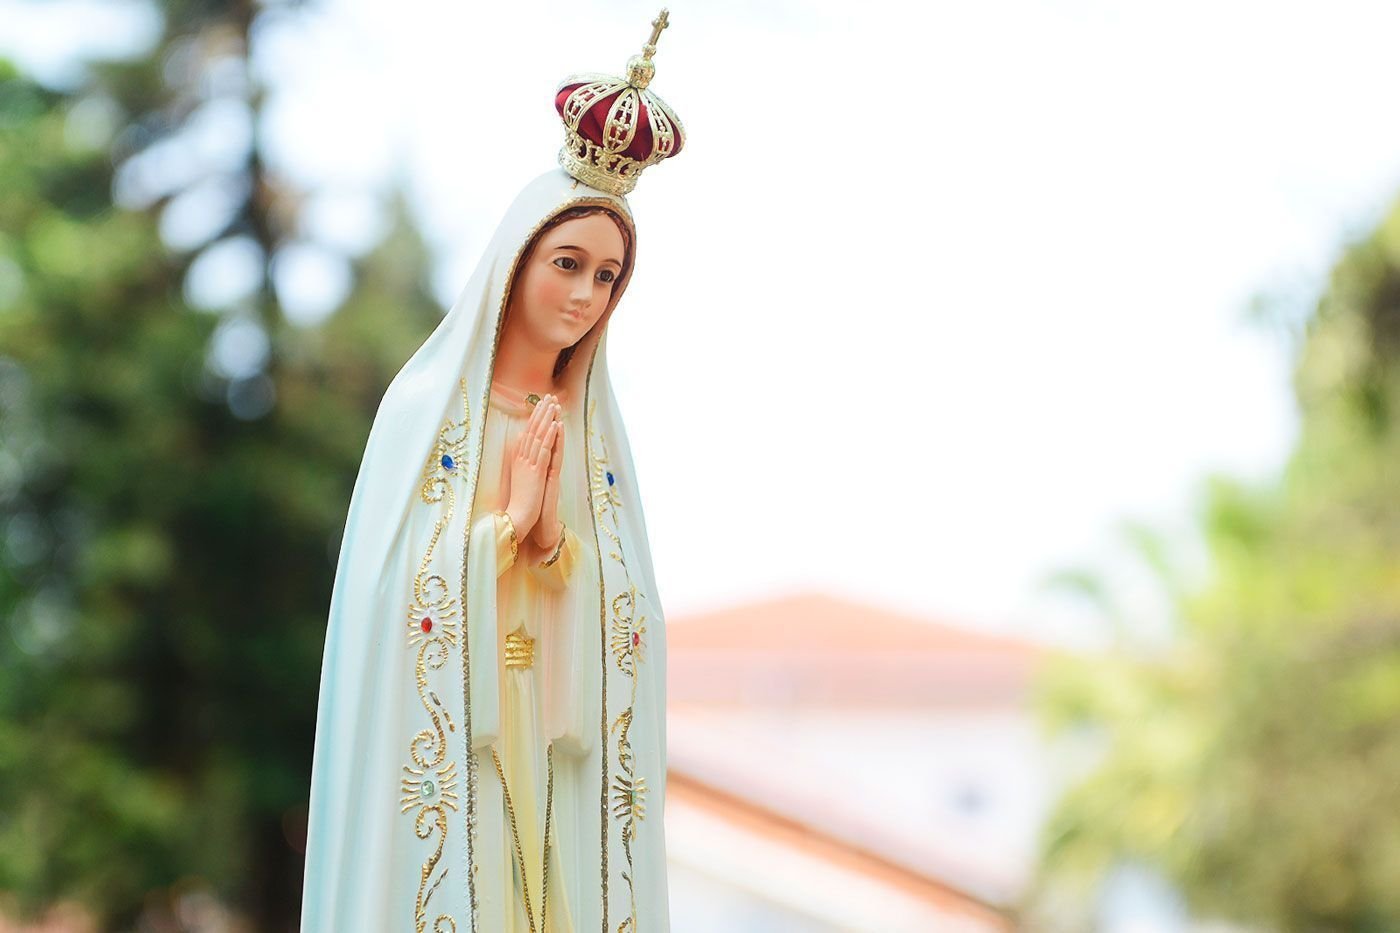 Estátua da Nossa Senhora com coroa e as palmas unidas em frente ao seu corpo.